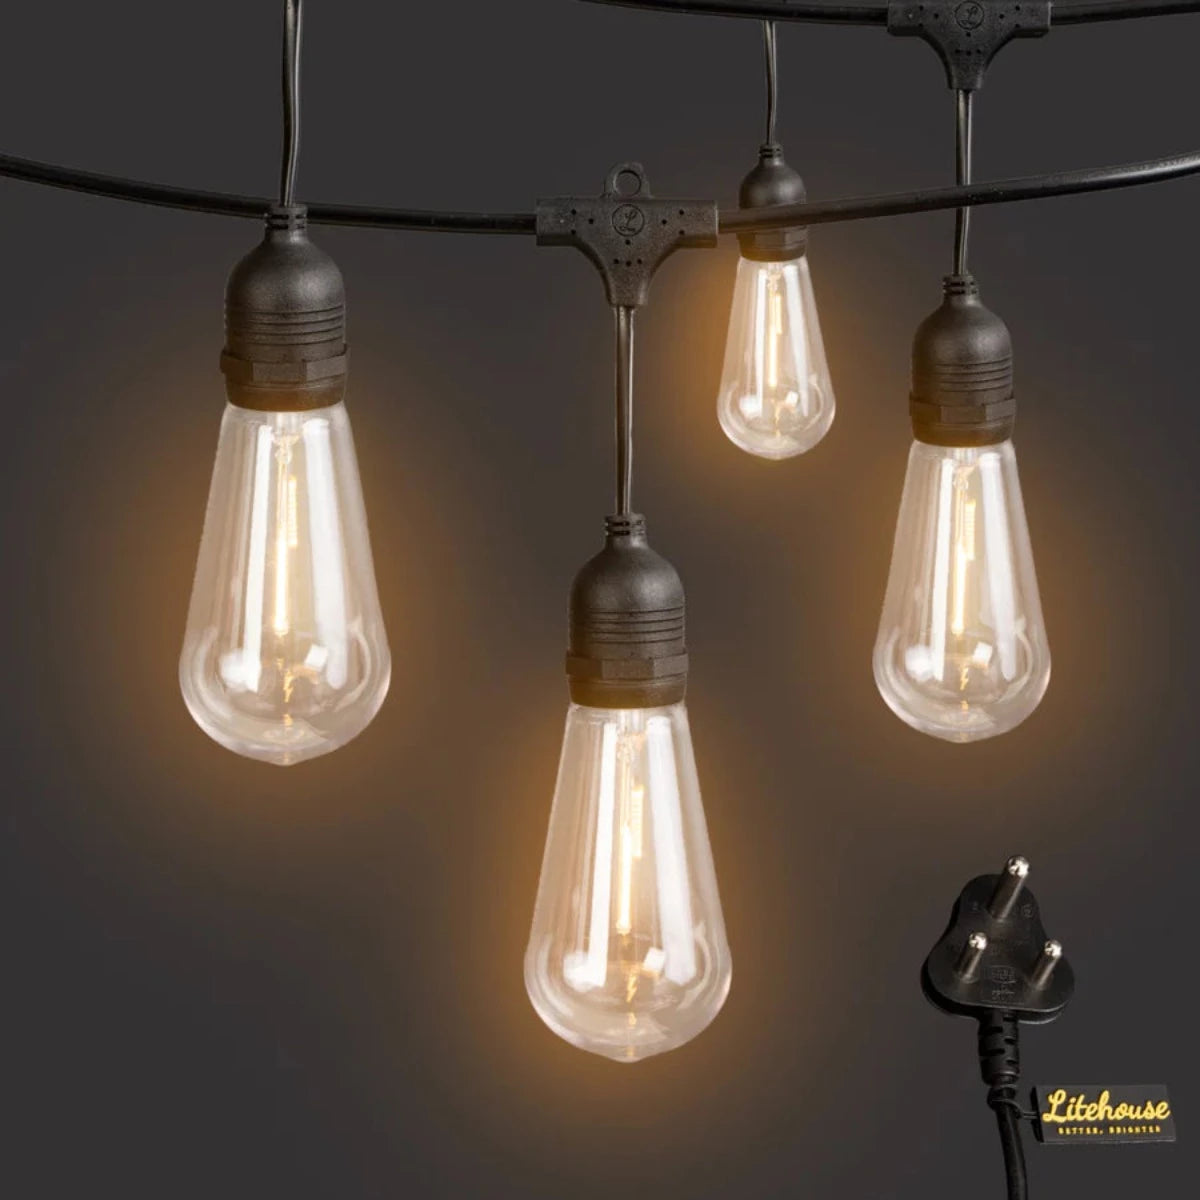 Litehouse LED Festoon Vintage Outdoor Bulb String Lights